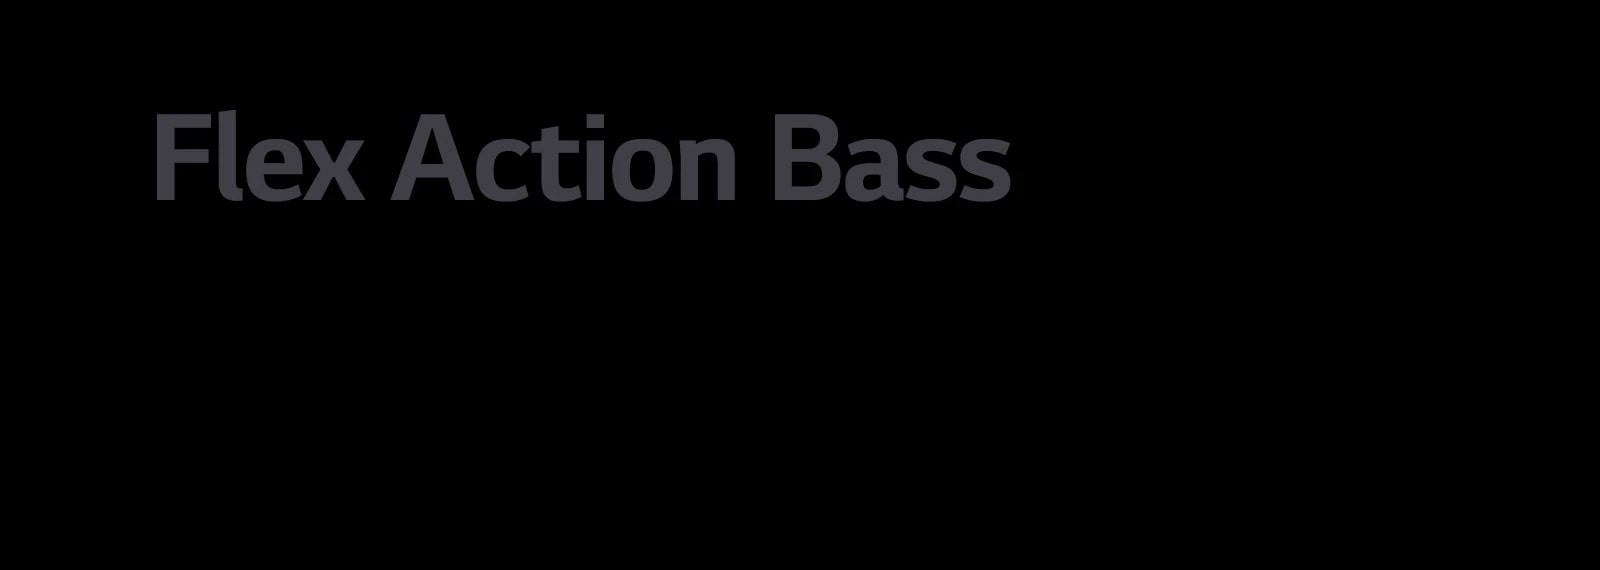 The copy "Flex Action Bass"